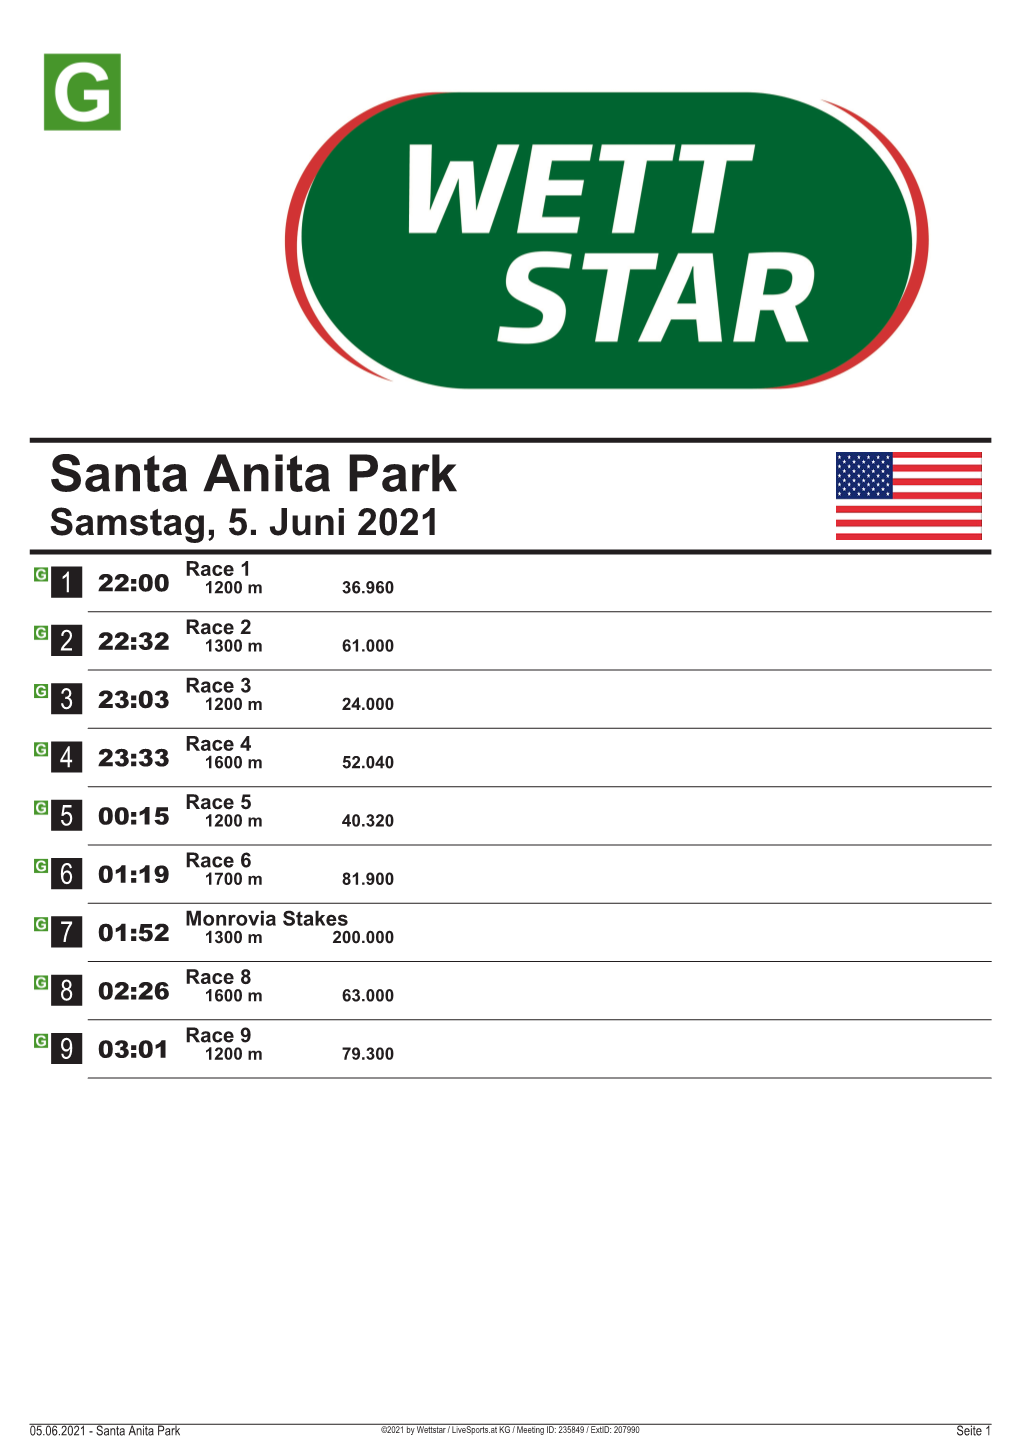 Santa Anita Park Samstag, 5